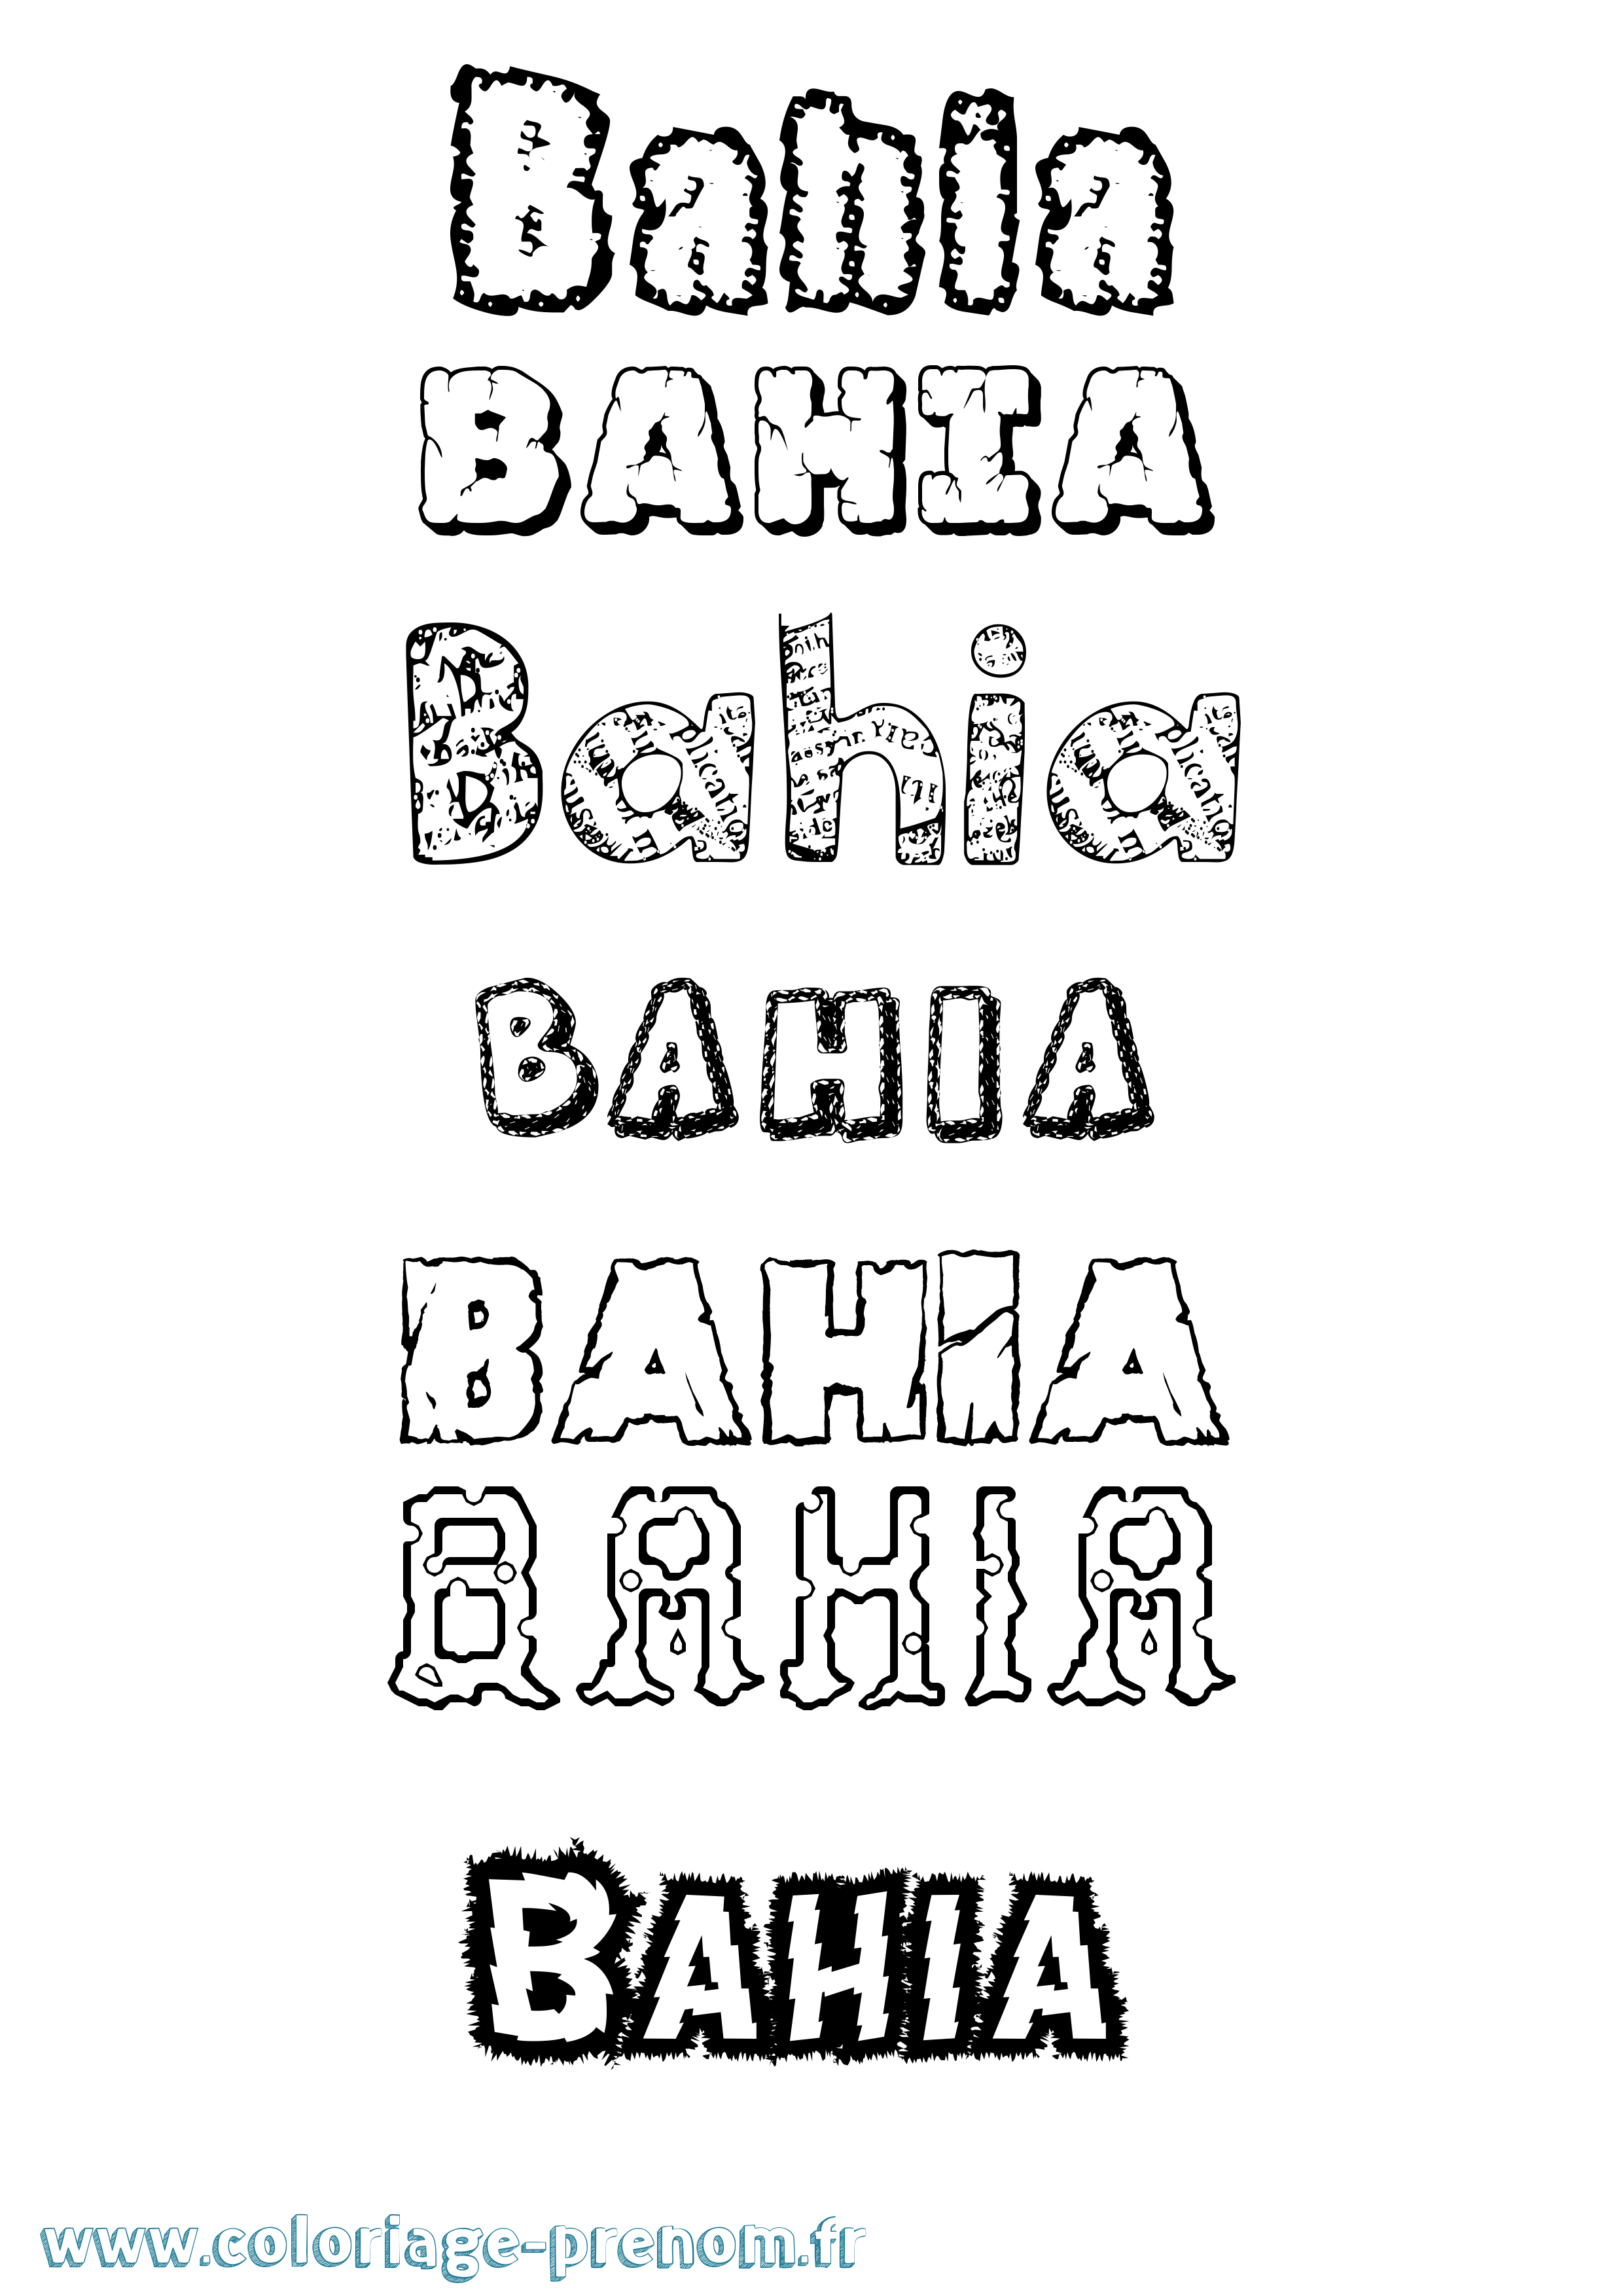 Coloriage prénom Bahia